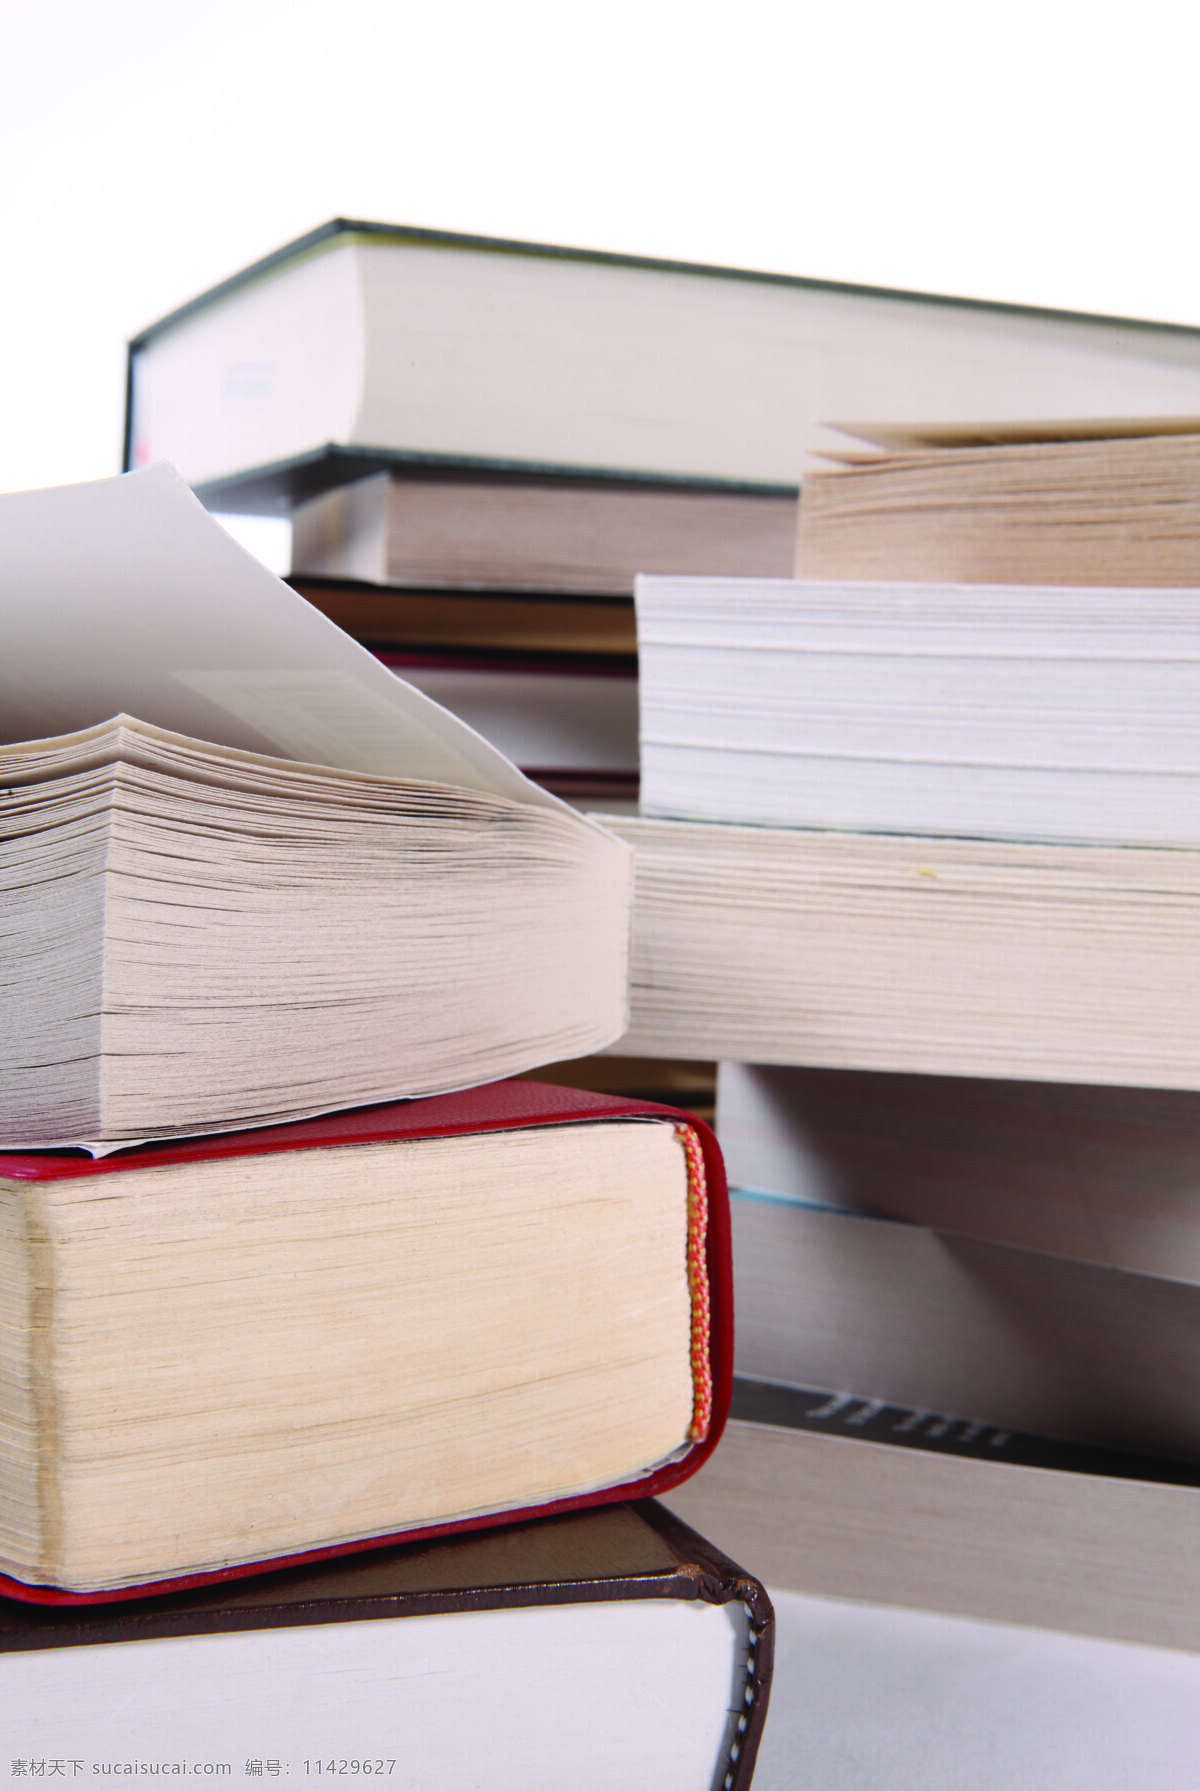 教育 看书 生活百科 书 书本 书籍 书桌 图书 书海 堆起的书 字典 阅读 学习乐趣 文学 知识 学习办公